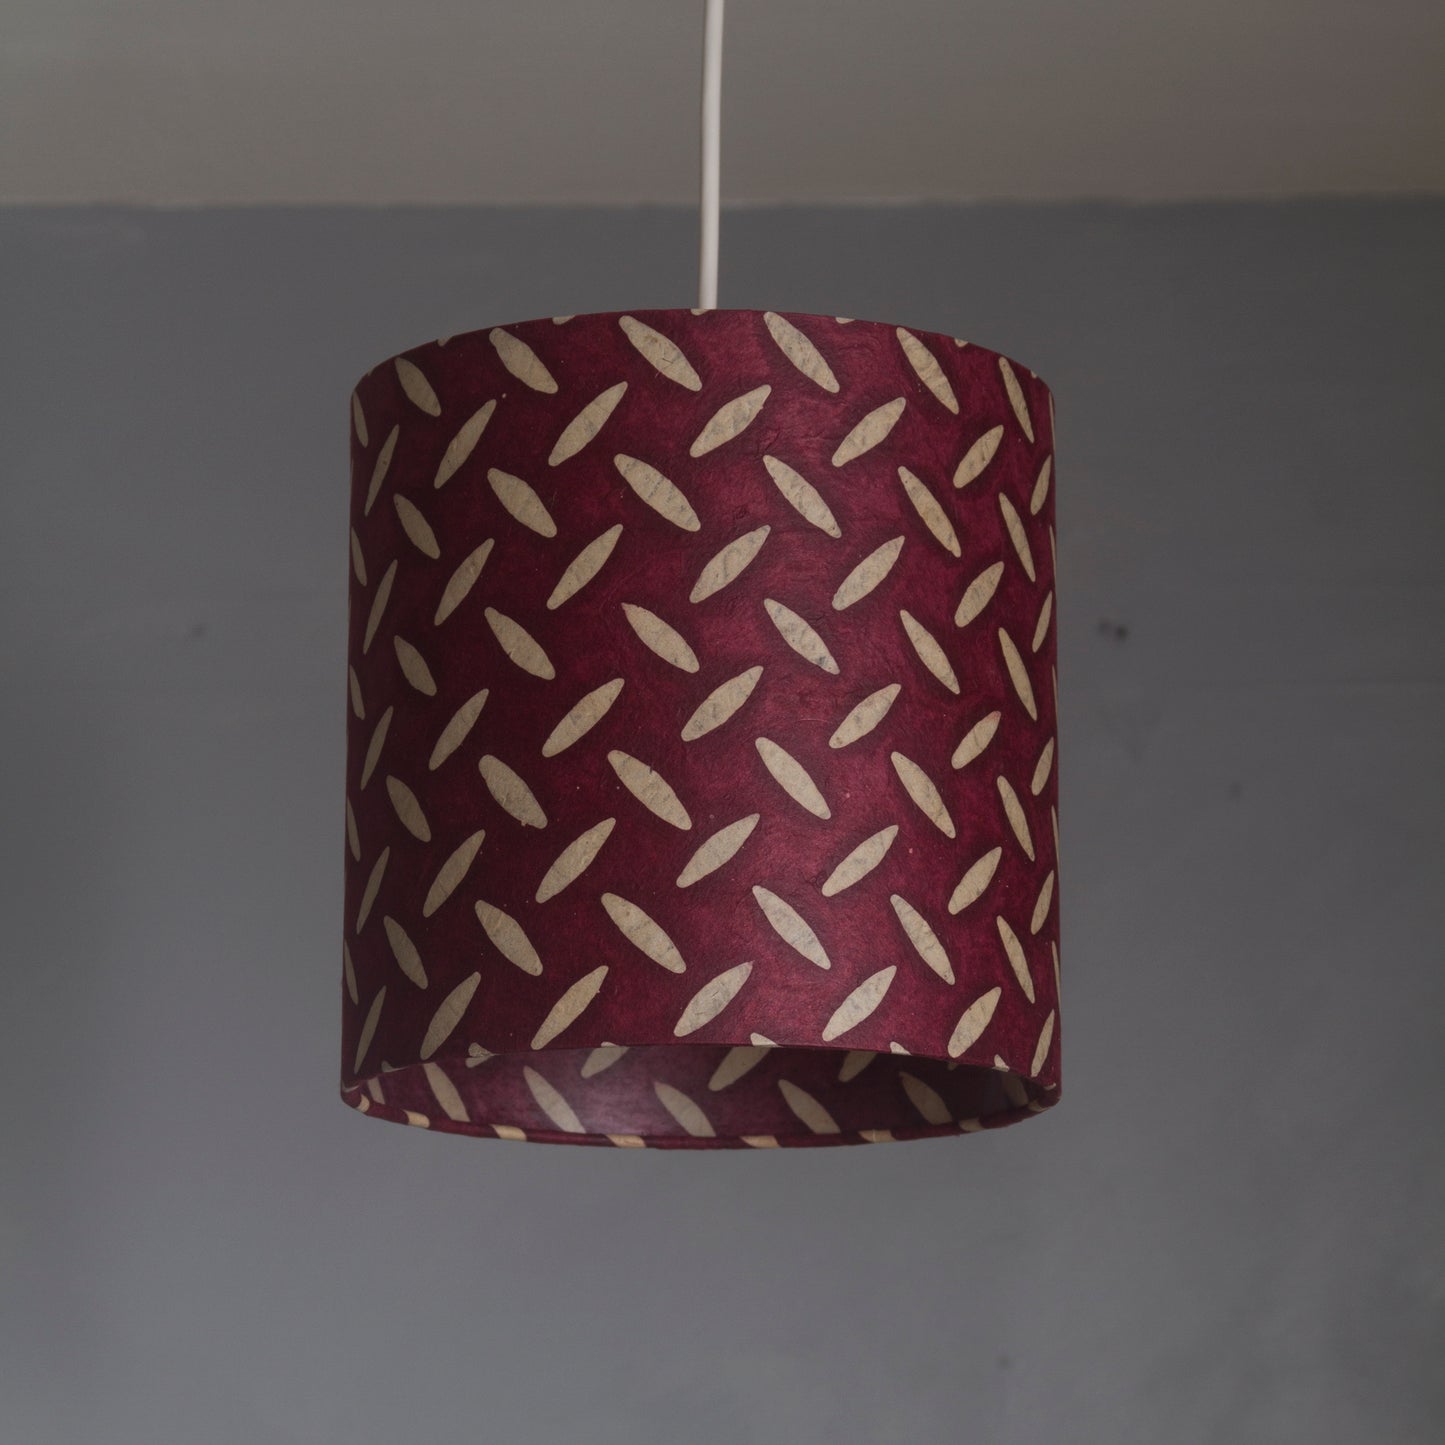 Oval Lamp Shade - P14 - Batik Tread Plate Cranberry, 30cm(w) x 30cm(h) x 22cm(d)